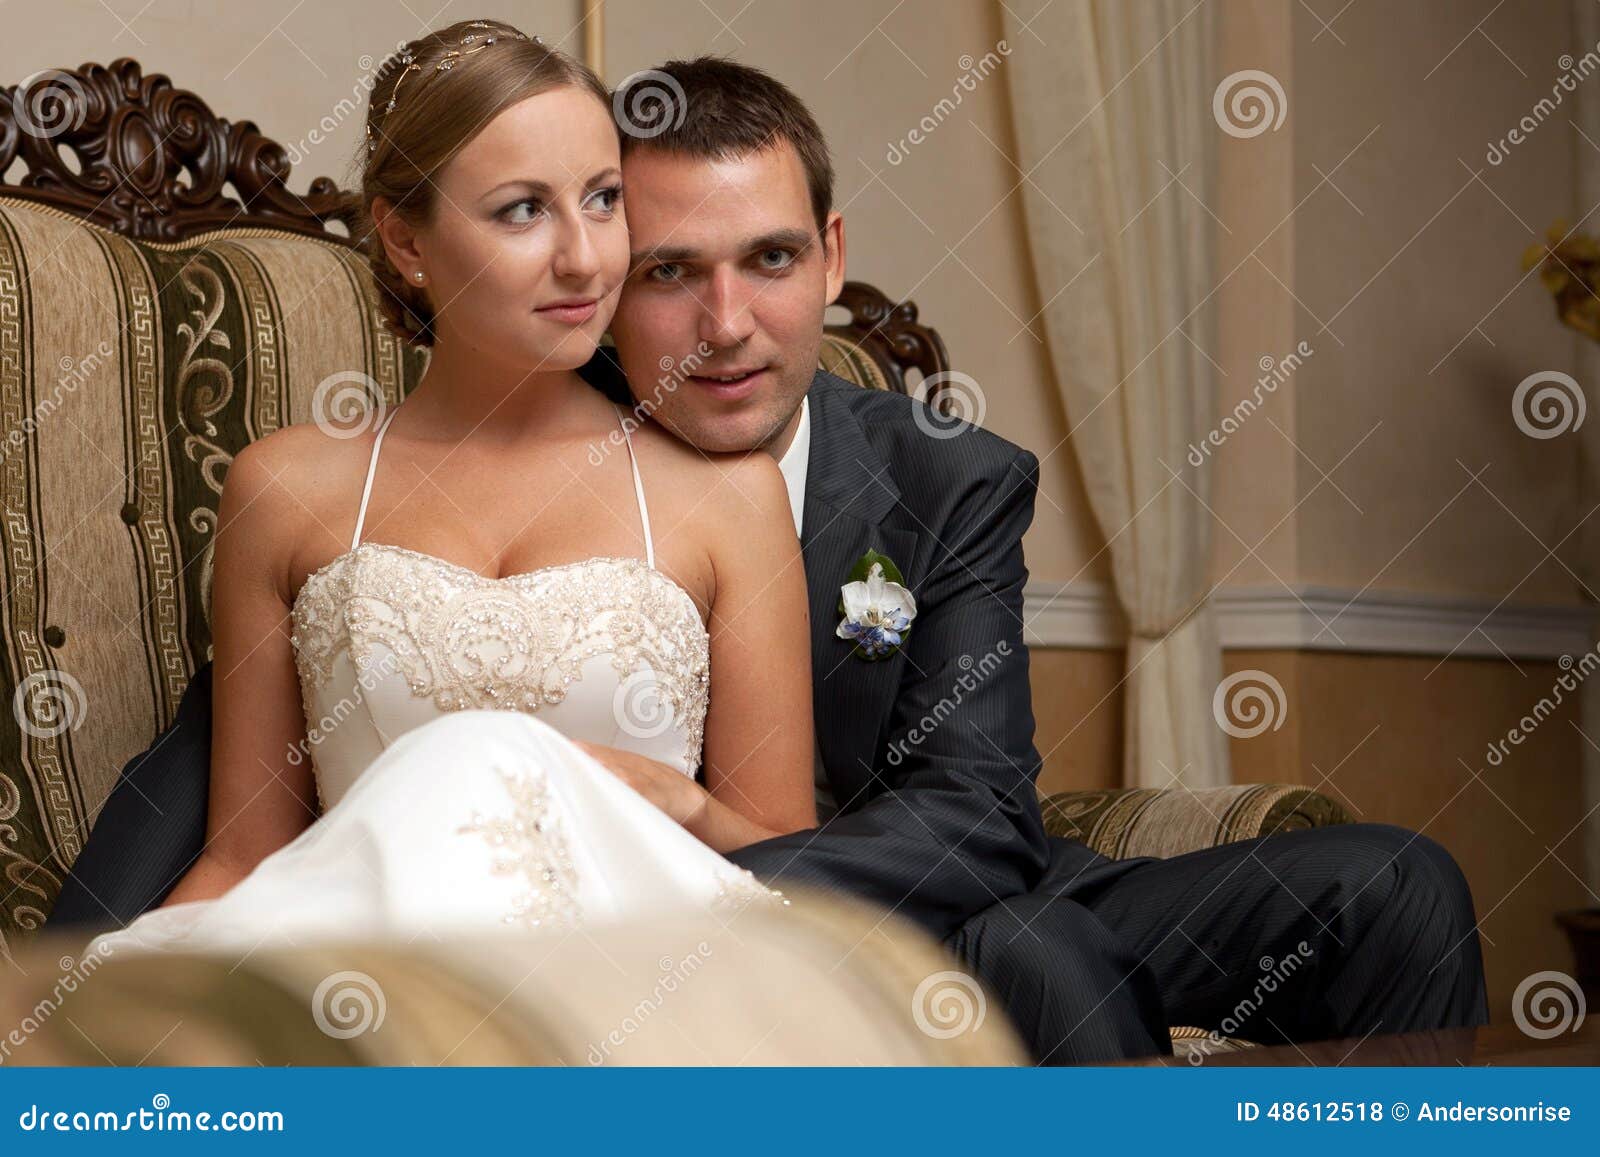 Танец мужа и жены. Жених и невеста на диване. Молодожены на диване. Свадебные фото молодожены сидящие на диване. Обнимающиеся молодожены на троне фото.